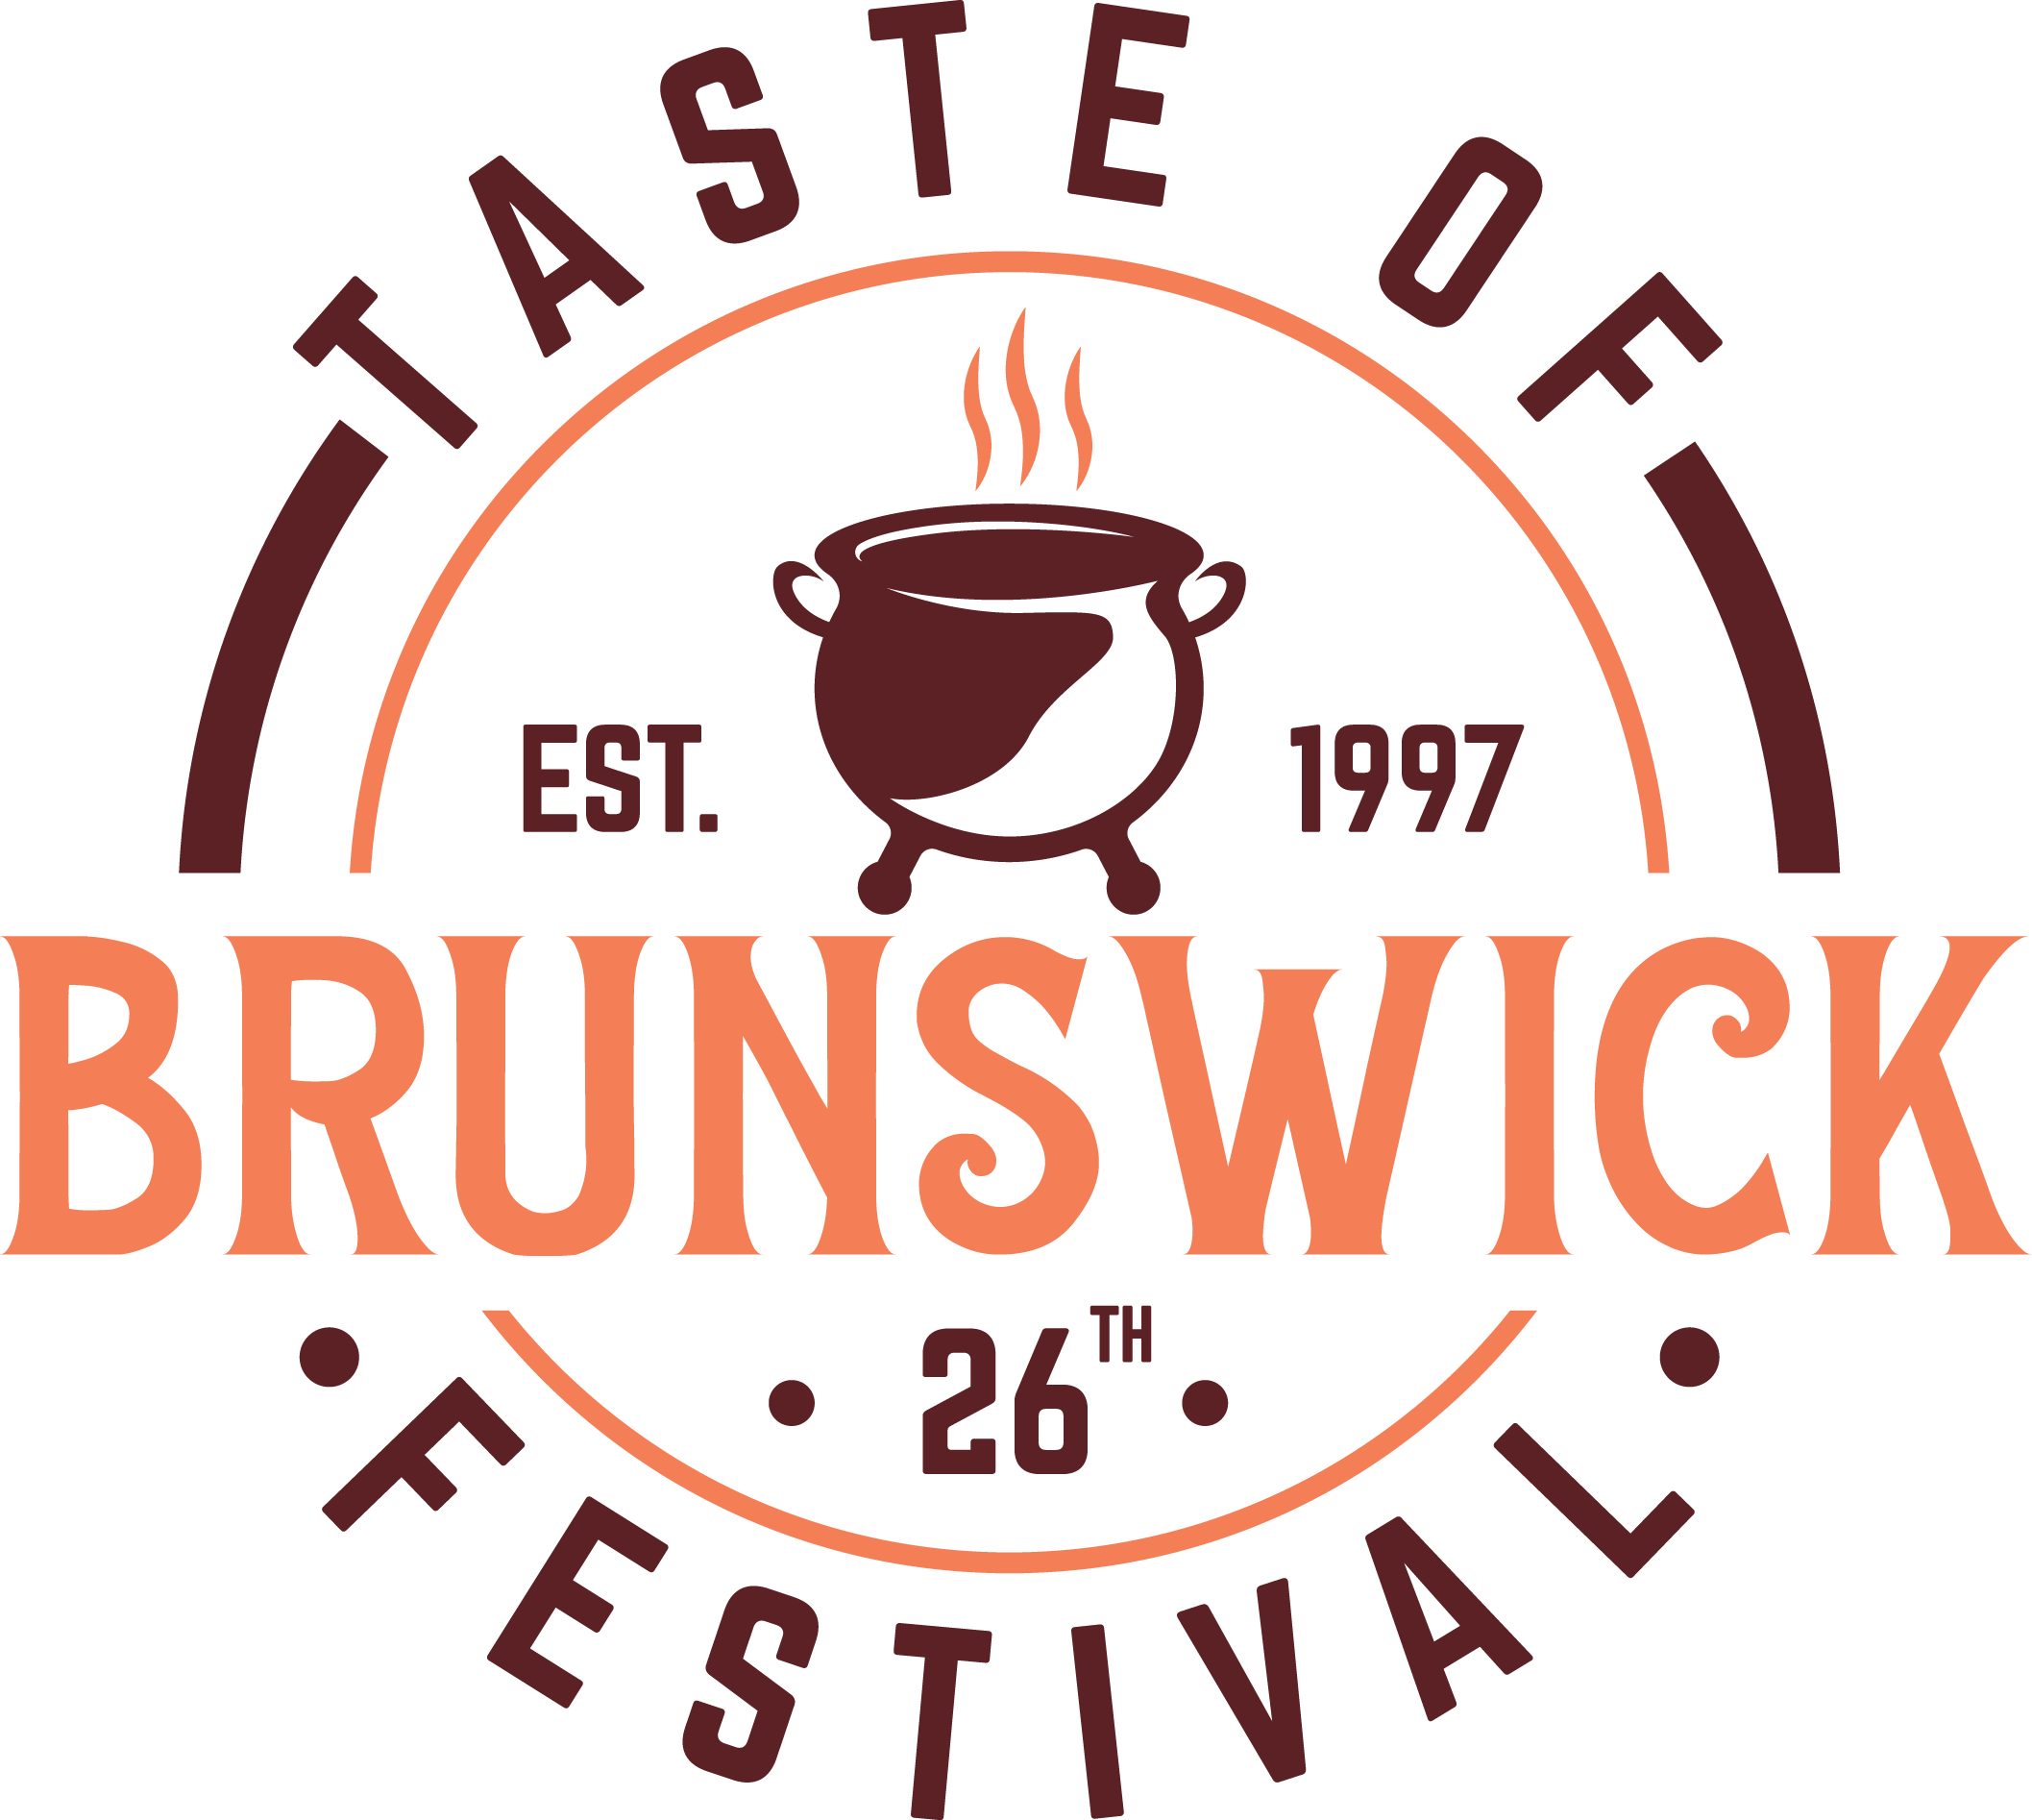 25th Taste of Brunswick Festival